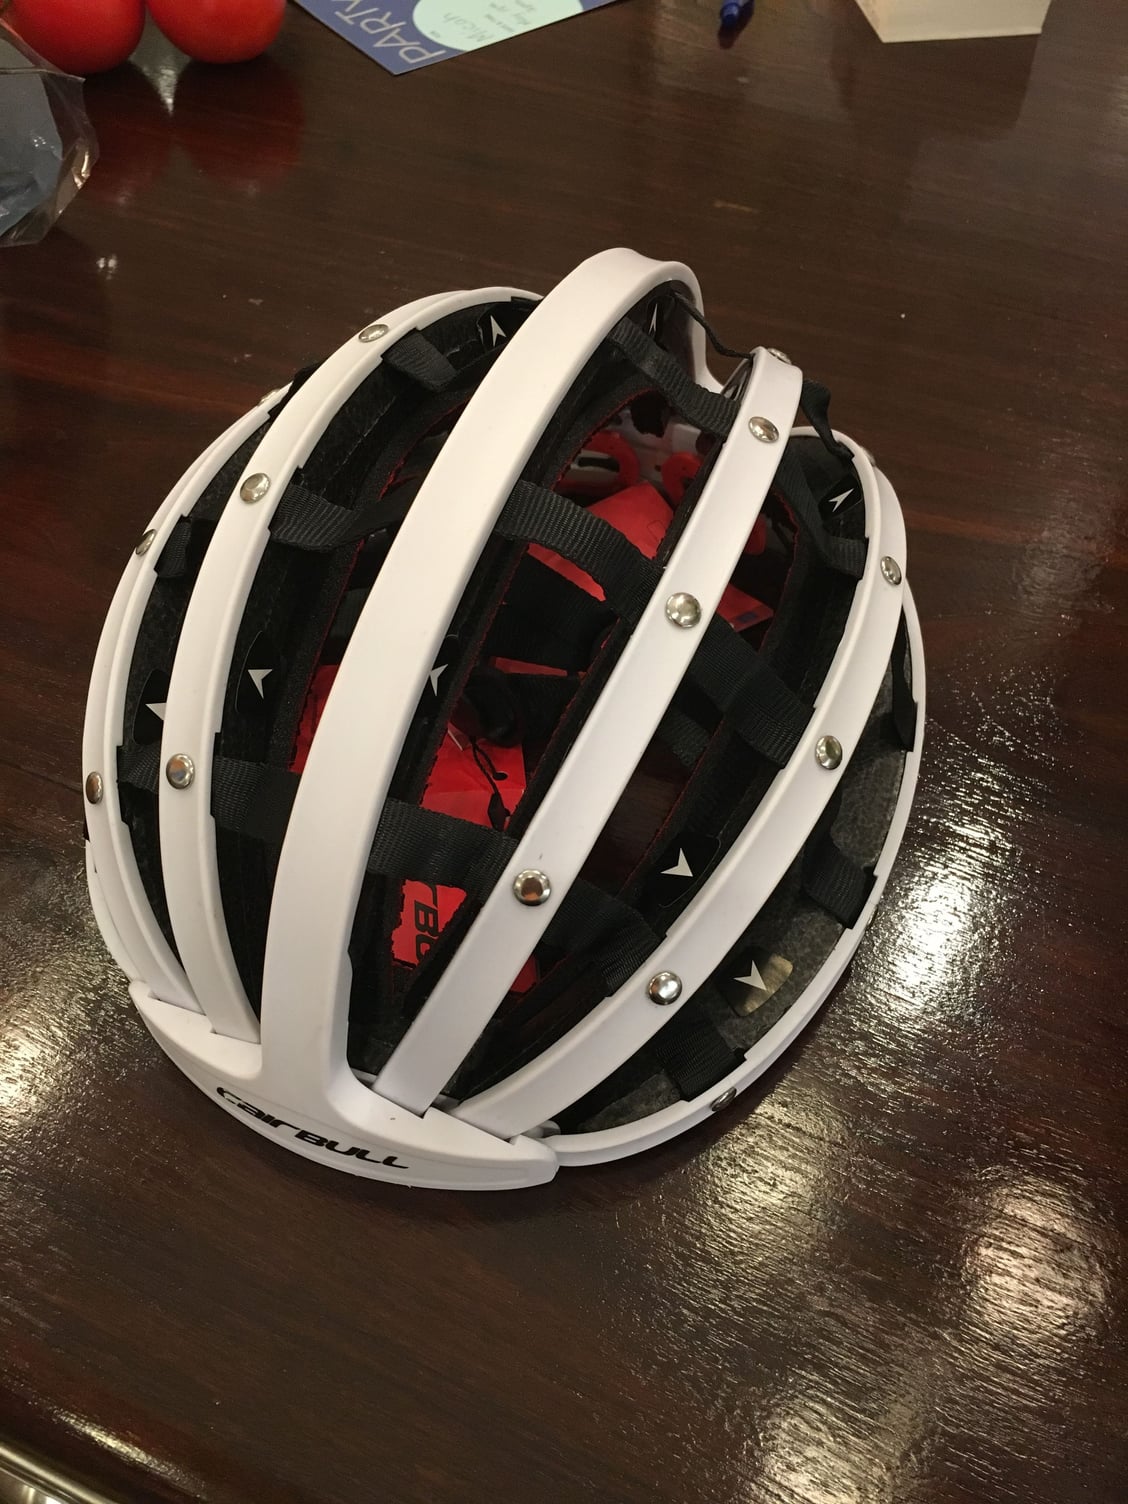 Folding Helmet Bike Forums